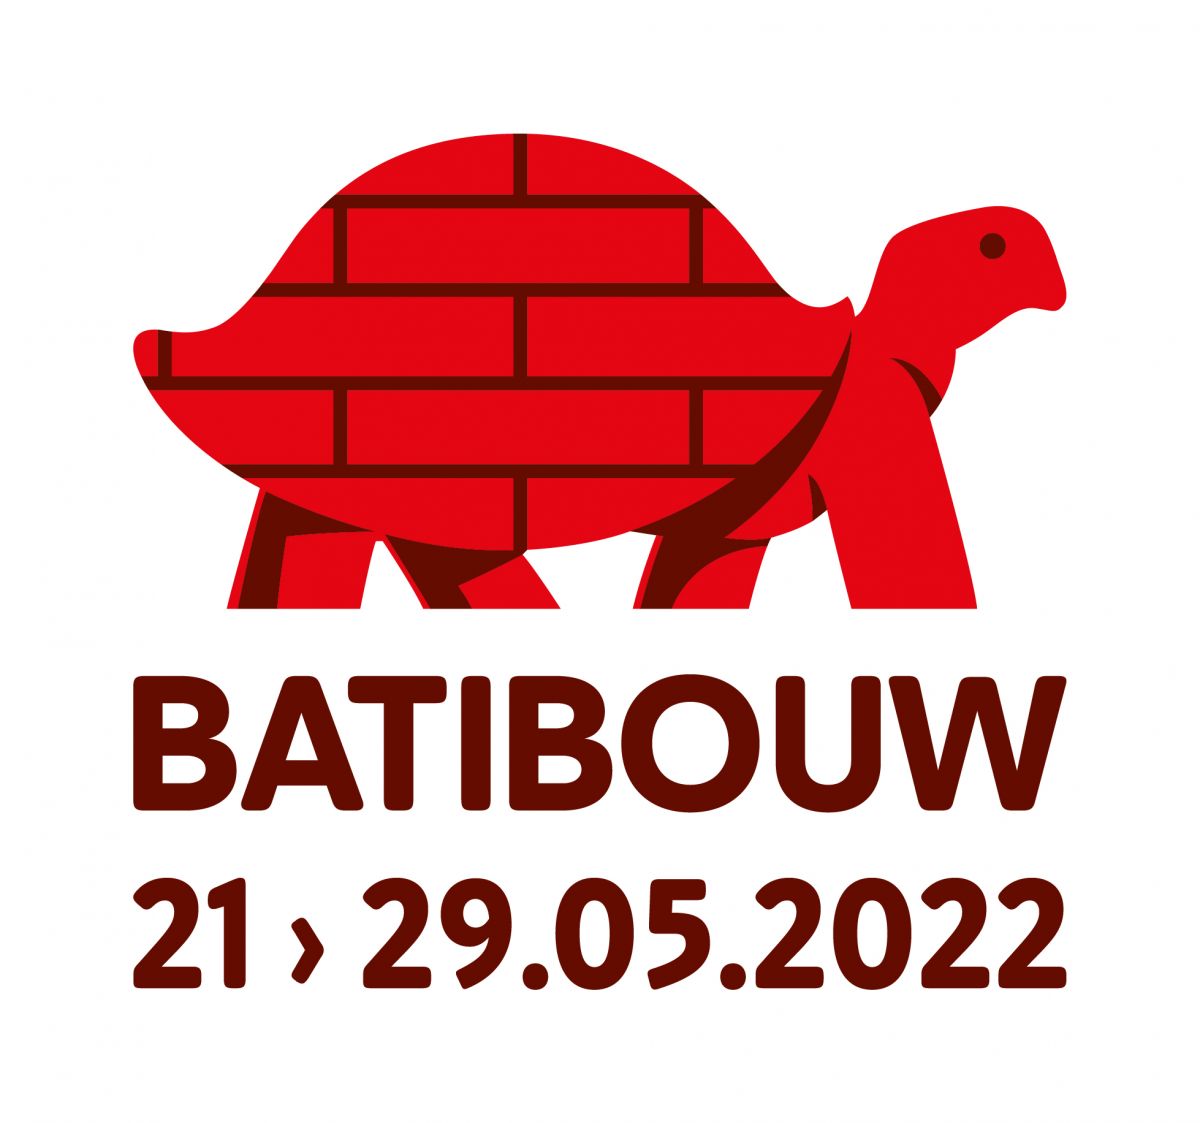 Batibouw 2022